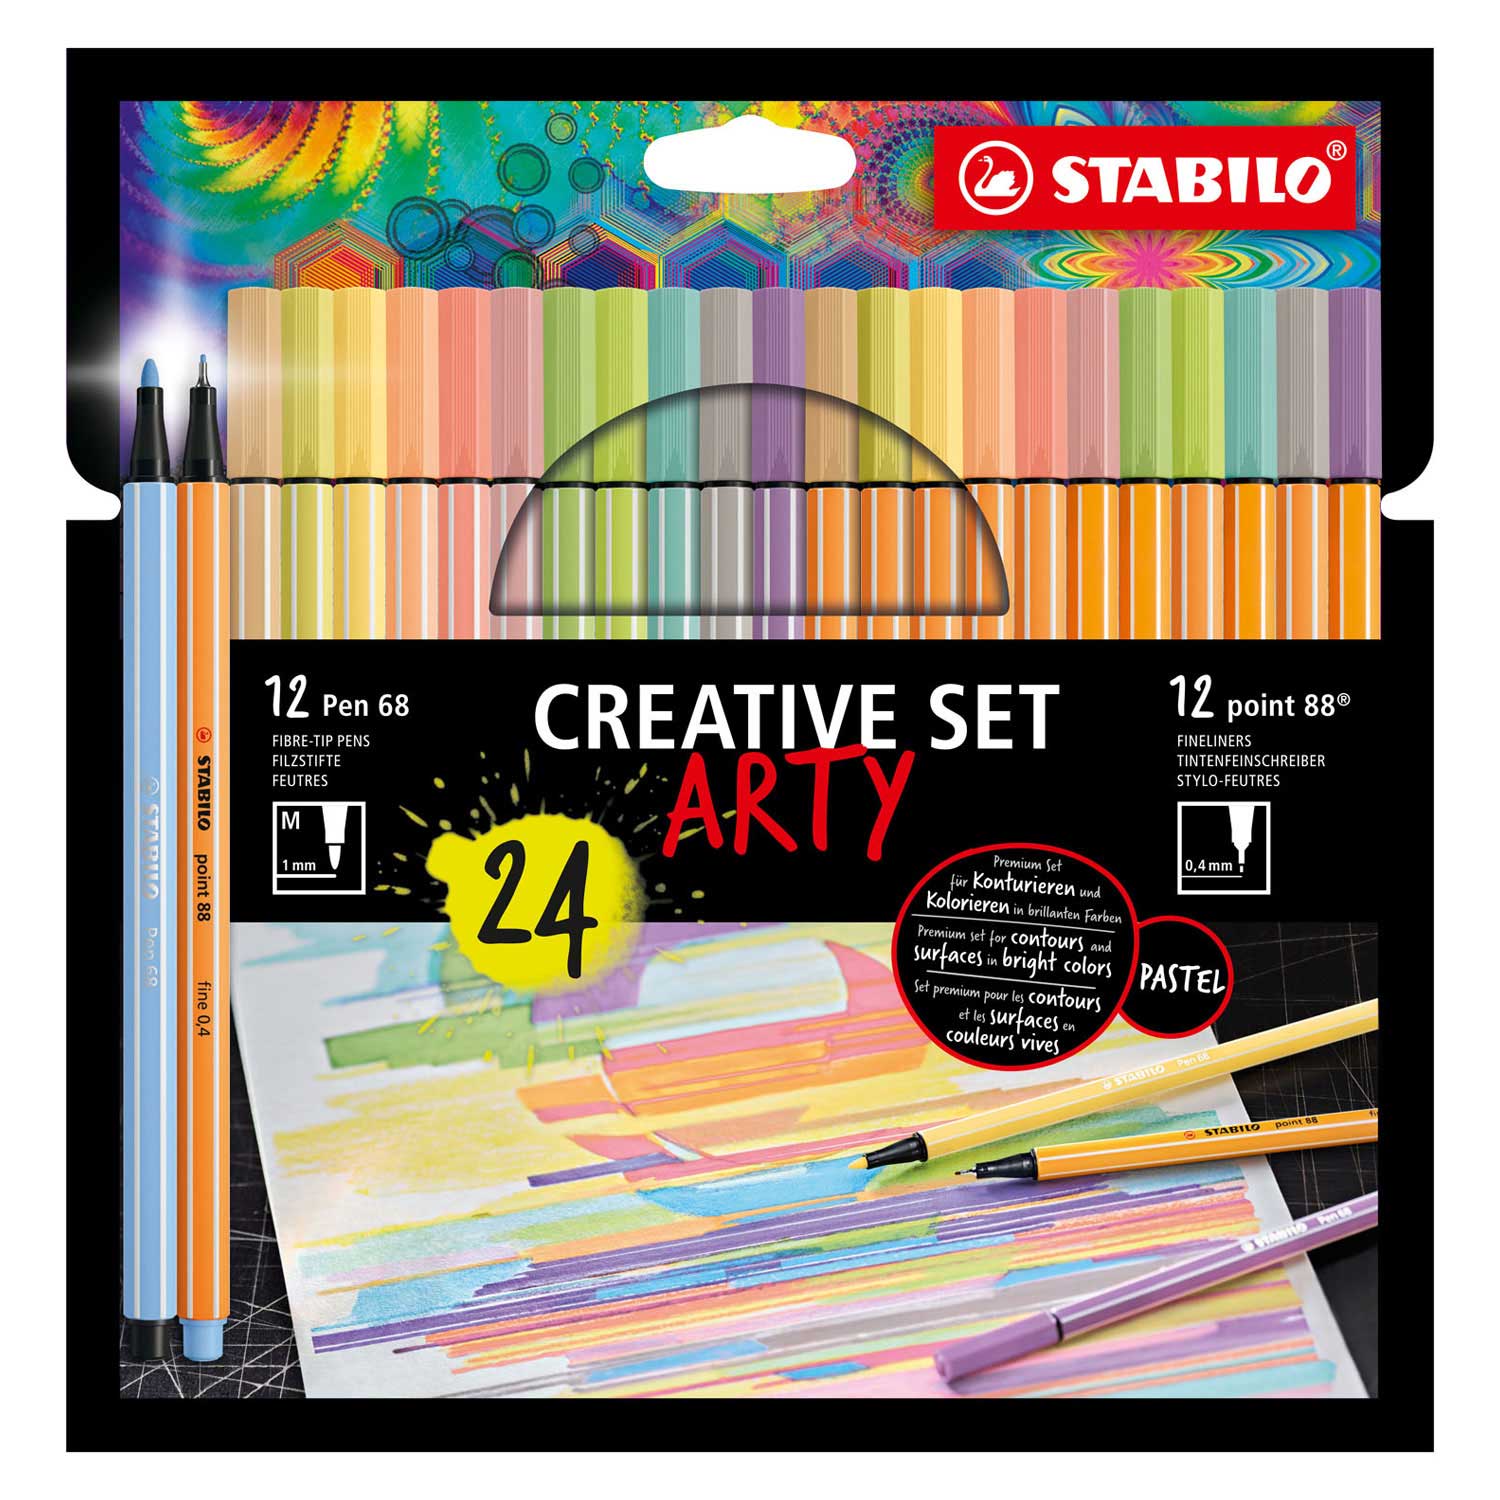 STABILO Creative Set - Pen 68 & Point 88 Pastel - ARTY - Trousse Combi 24 Pièces